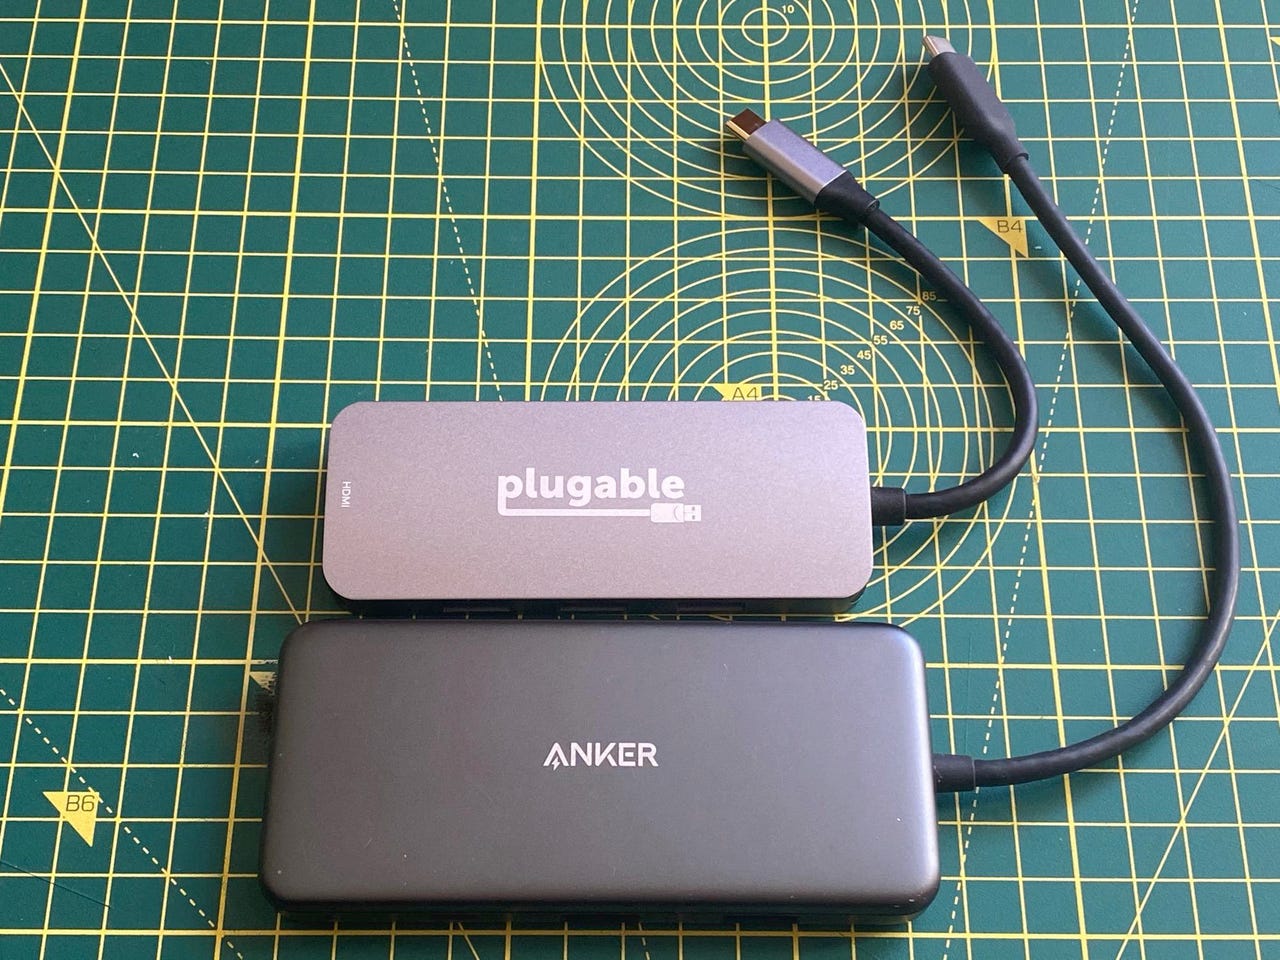 Plugable 7-in-1 USB-C Hub (USBC-7IN1)